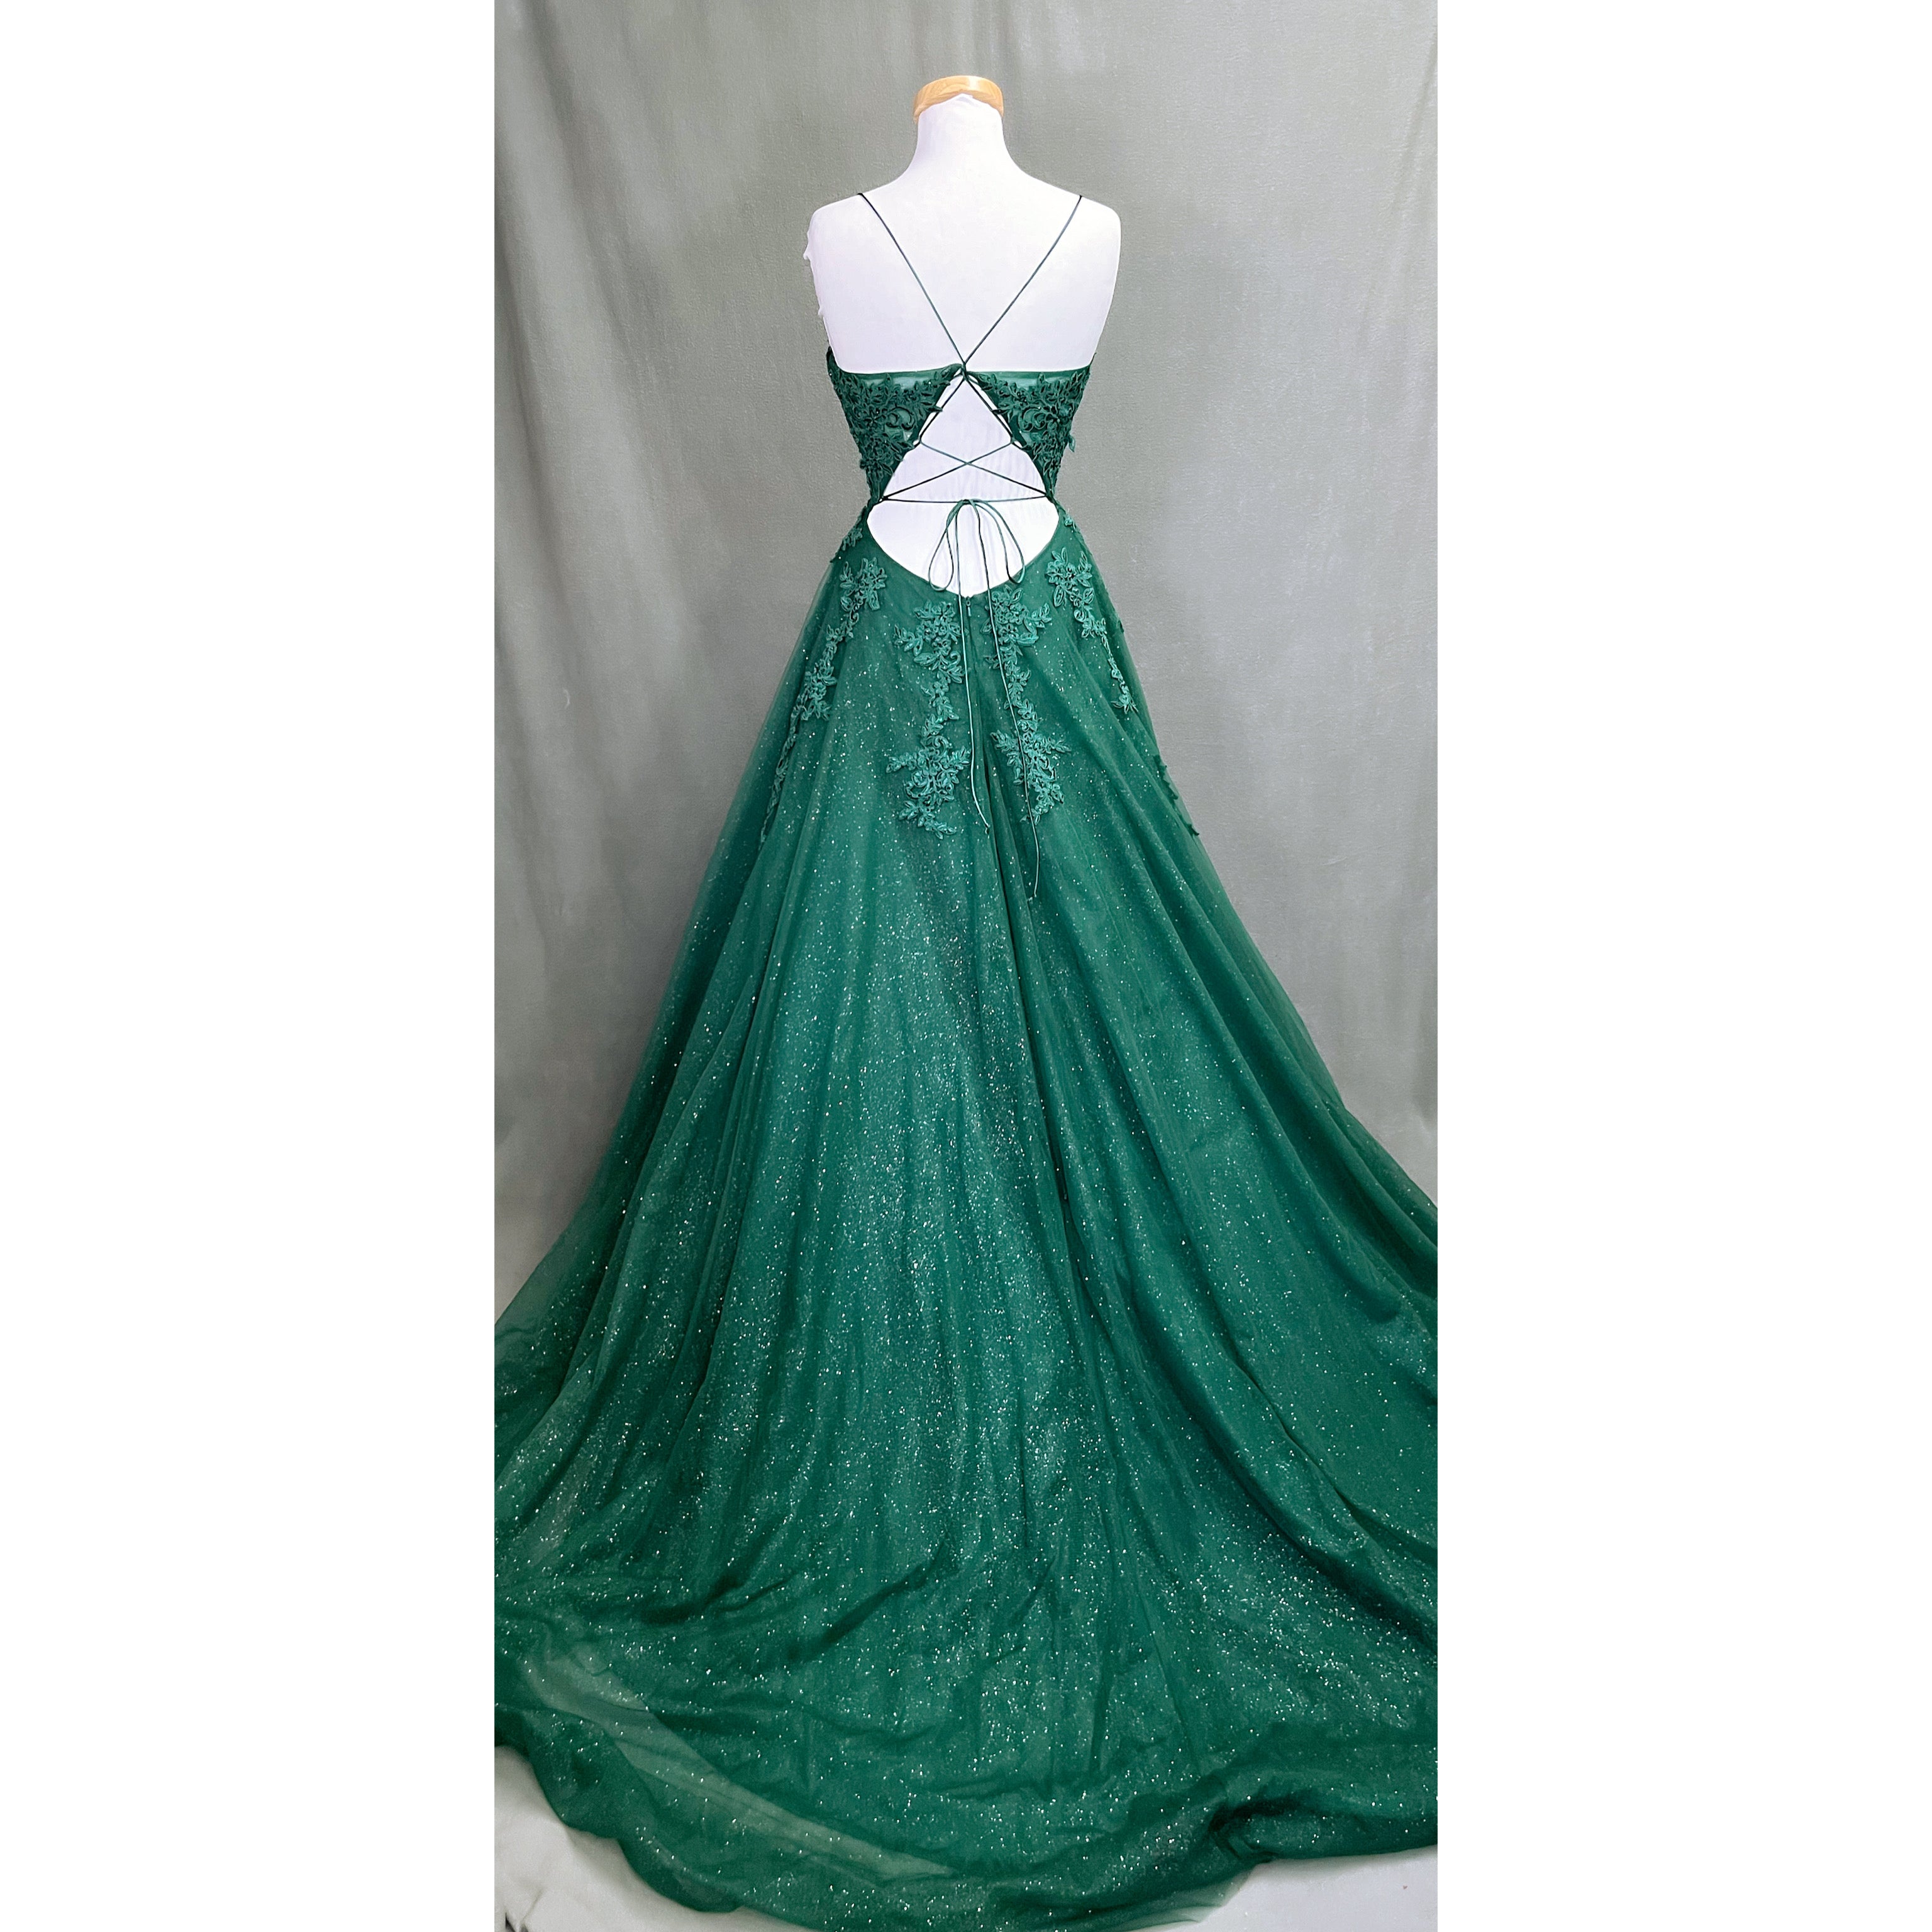 Nina Canacci evergreen ballgown, size 12